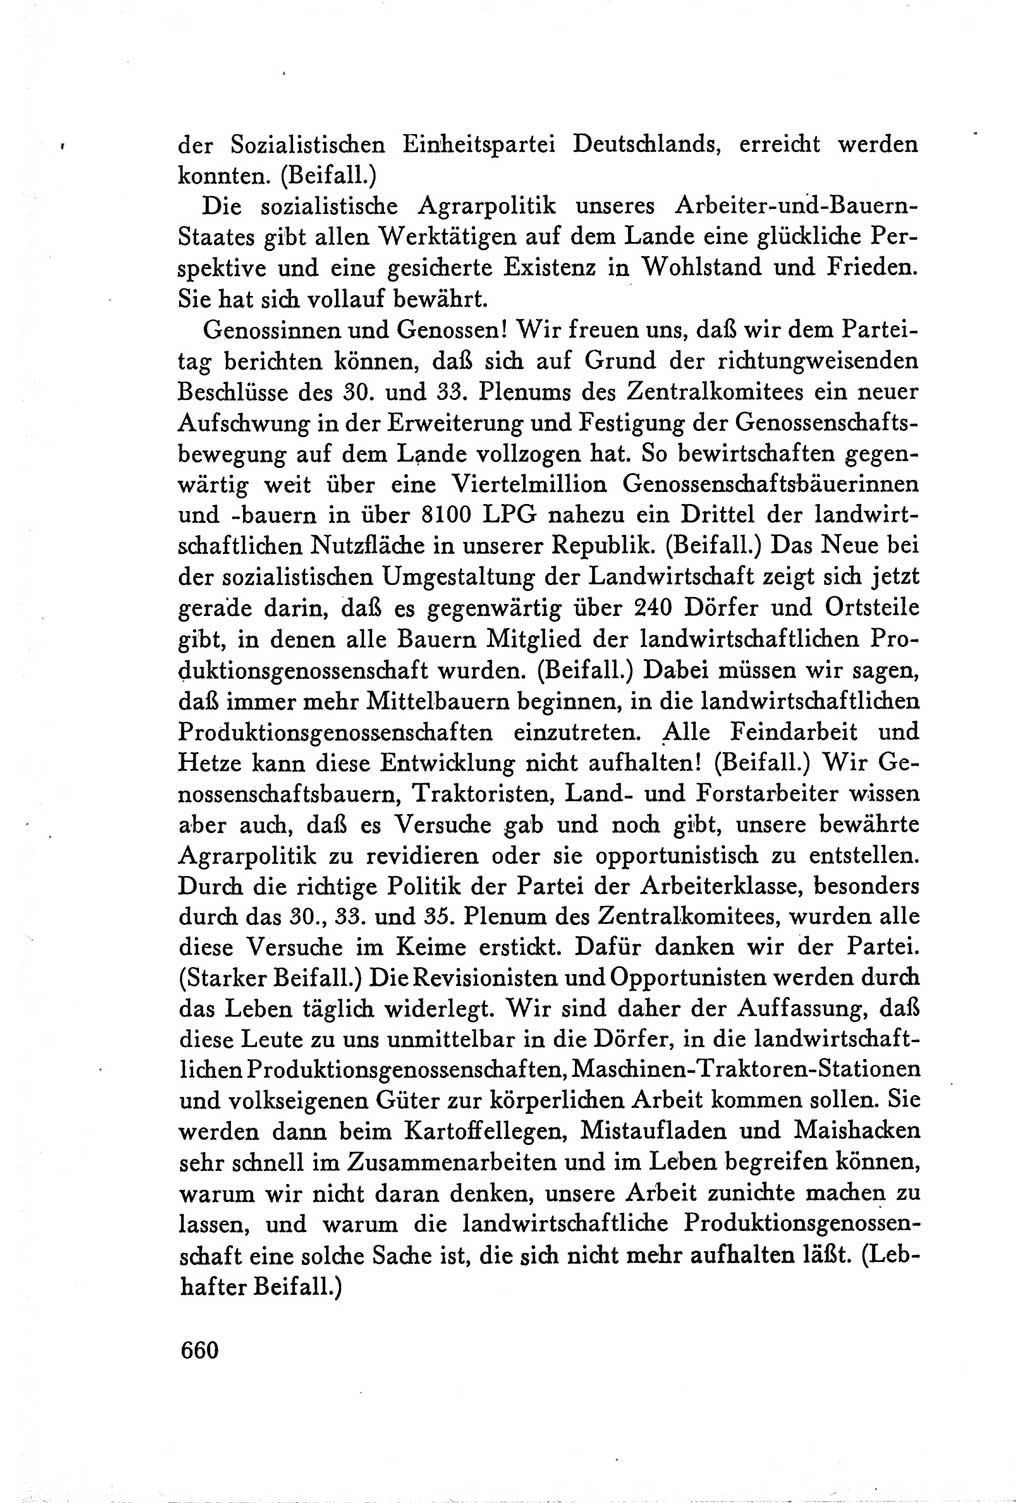 Protokoll der Verhandlungen des Ⅴ. Parteitages der Sozialistischen Einheitspartei Deutschlands (SED) [Deutsche Demokratische Republik (DDR)] 1958, Seite 660